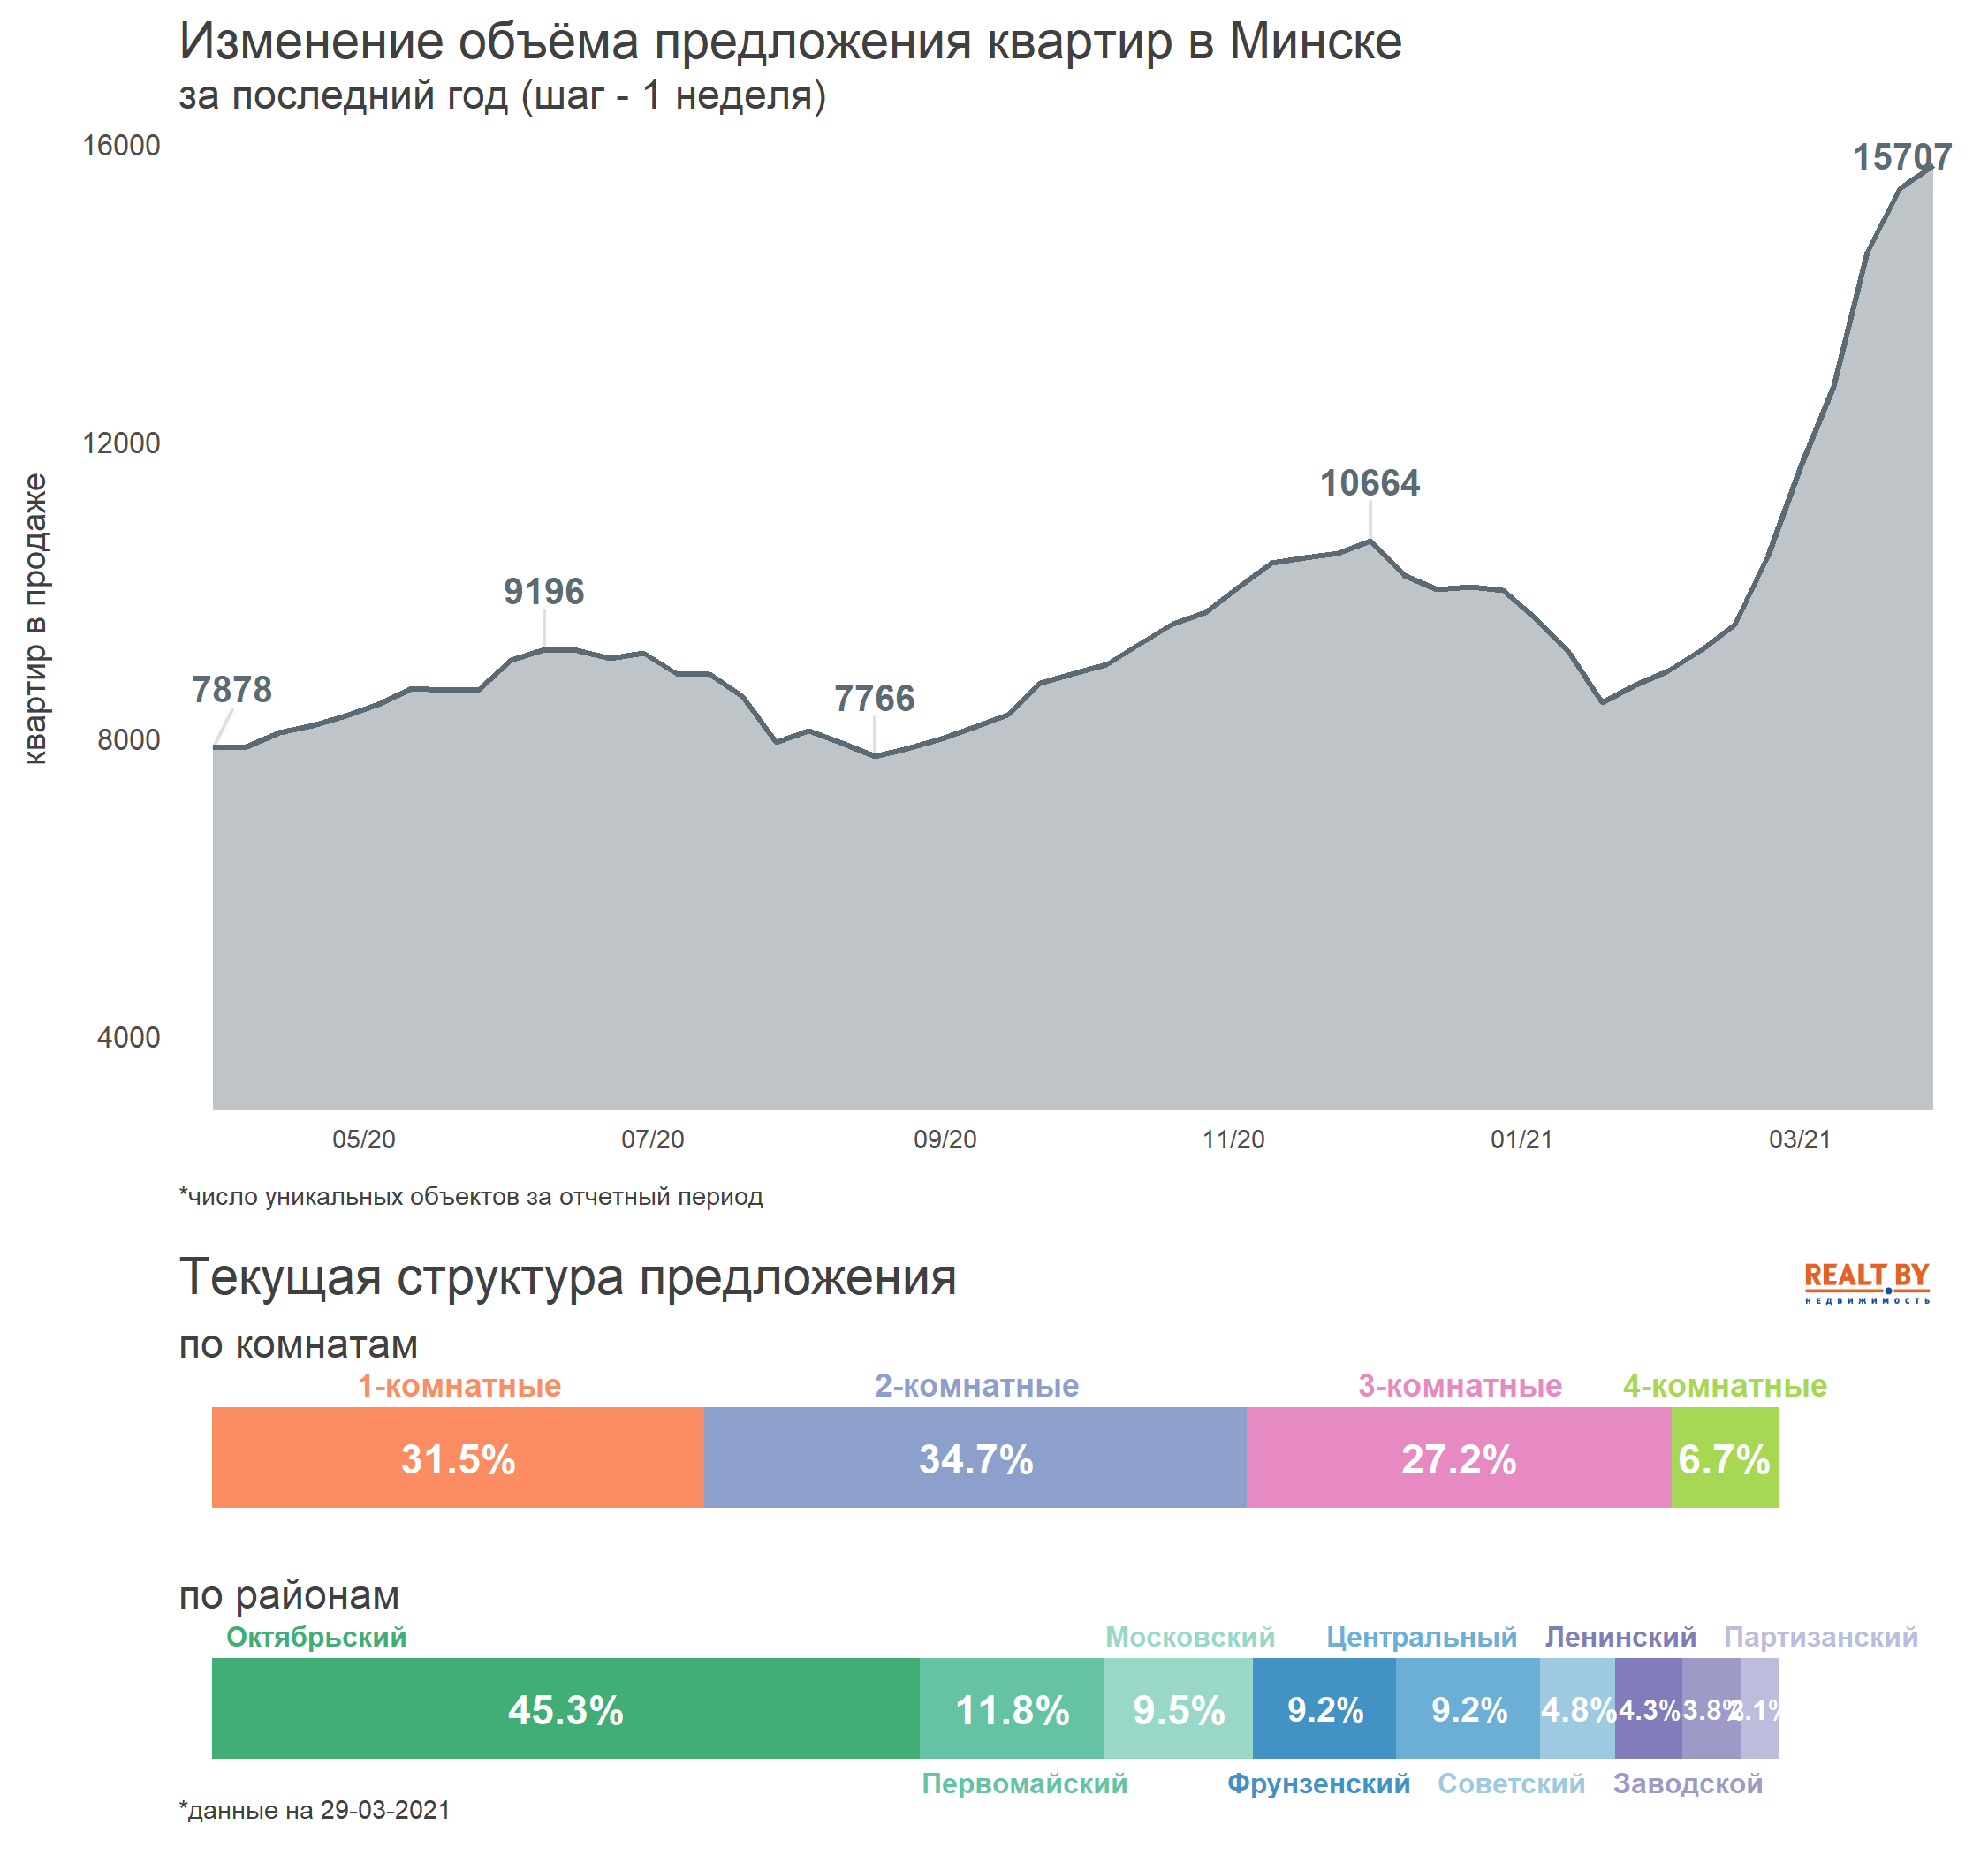 Мониторинг цен предложения квартир в Минске за 22-29 марта 2021 года